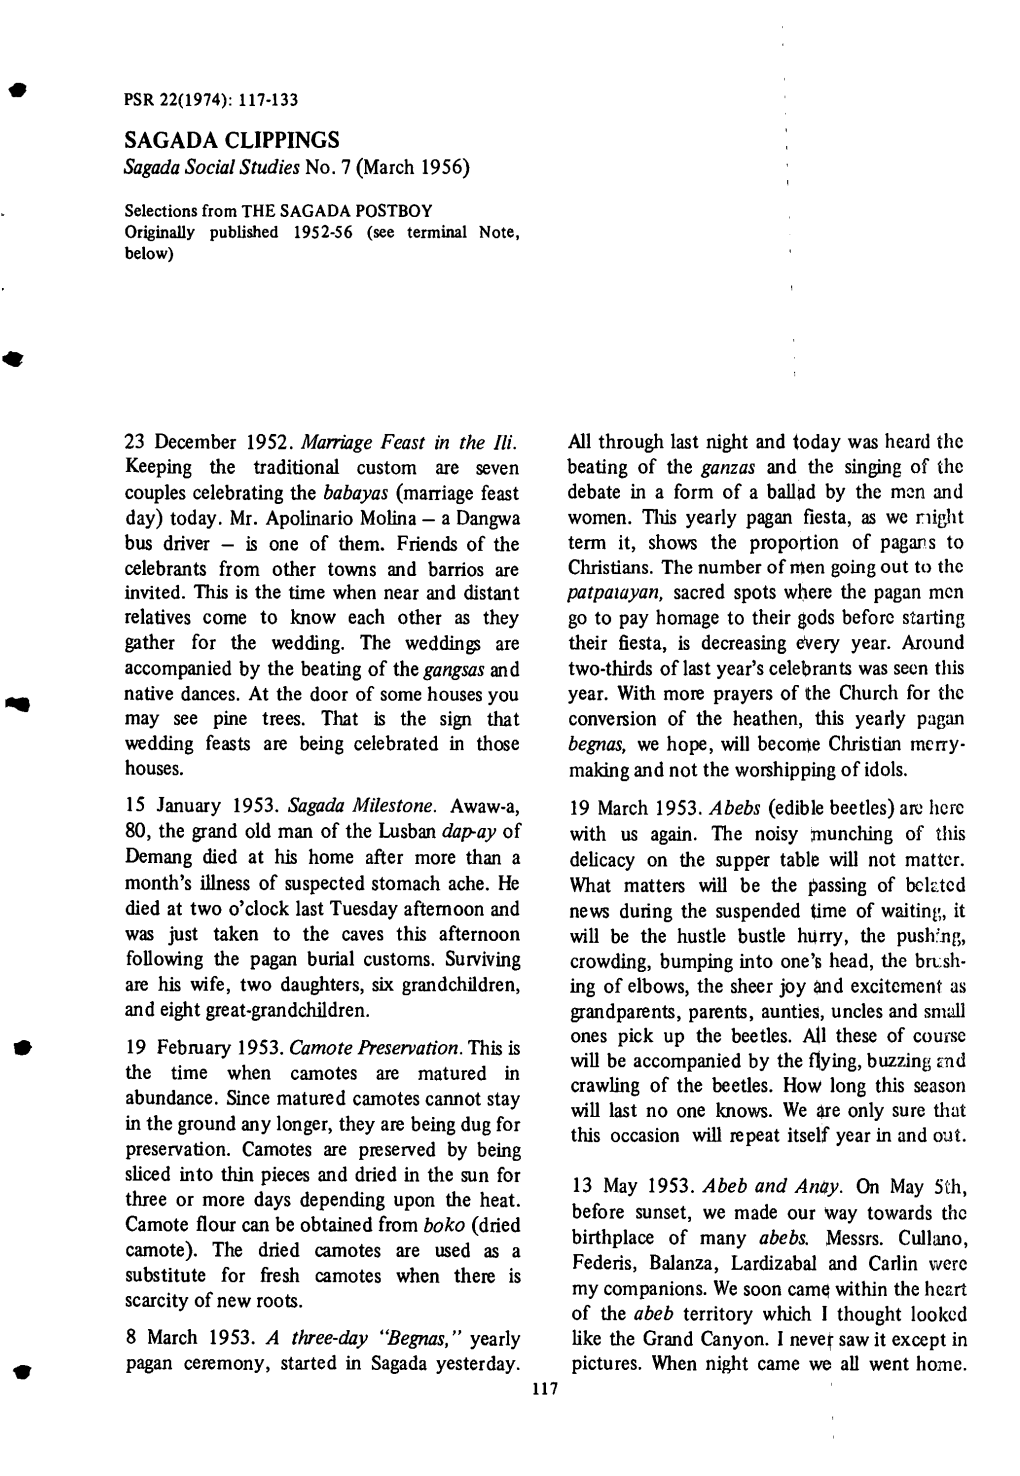 SAGADA CLIPPINGS Sagada Social Studies No.7 (March 1956)